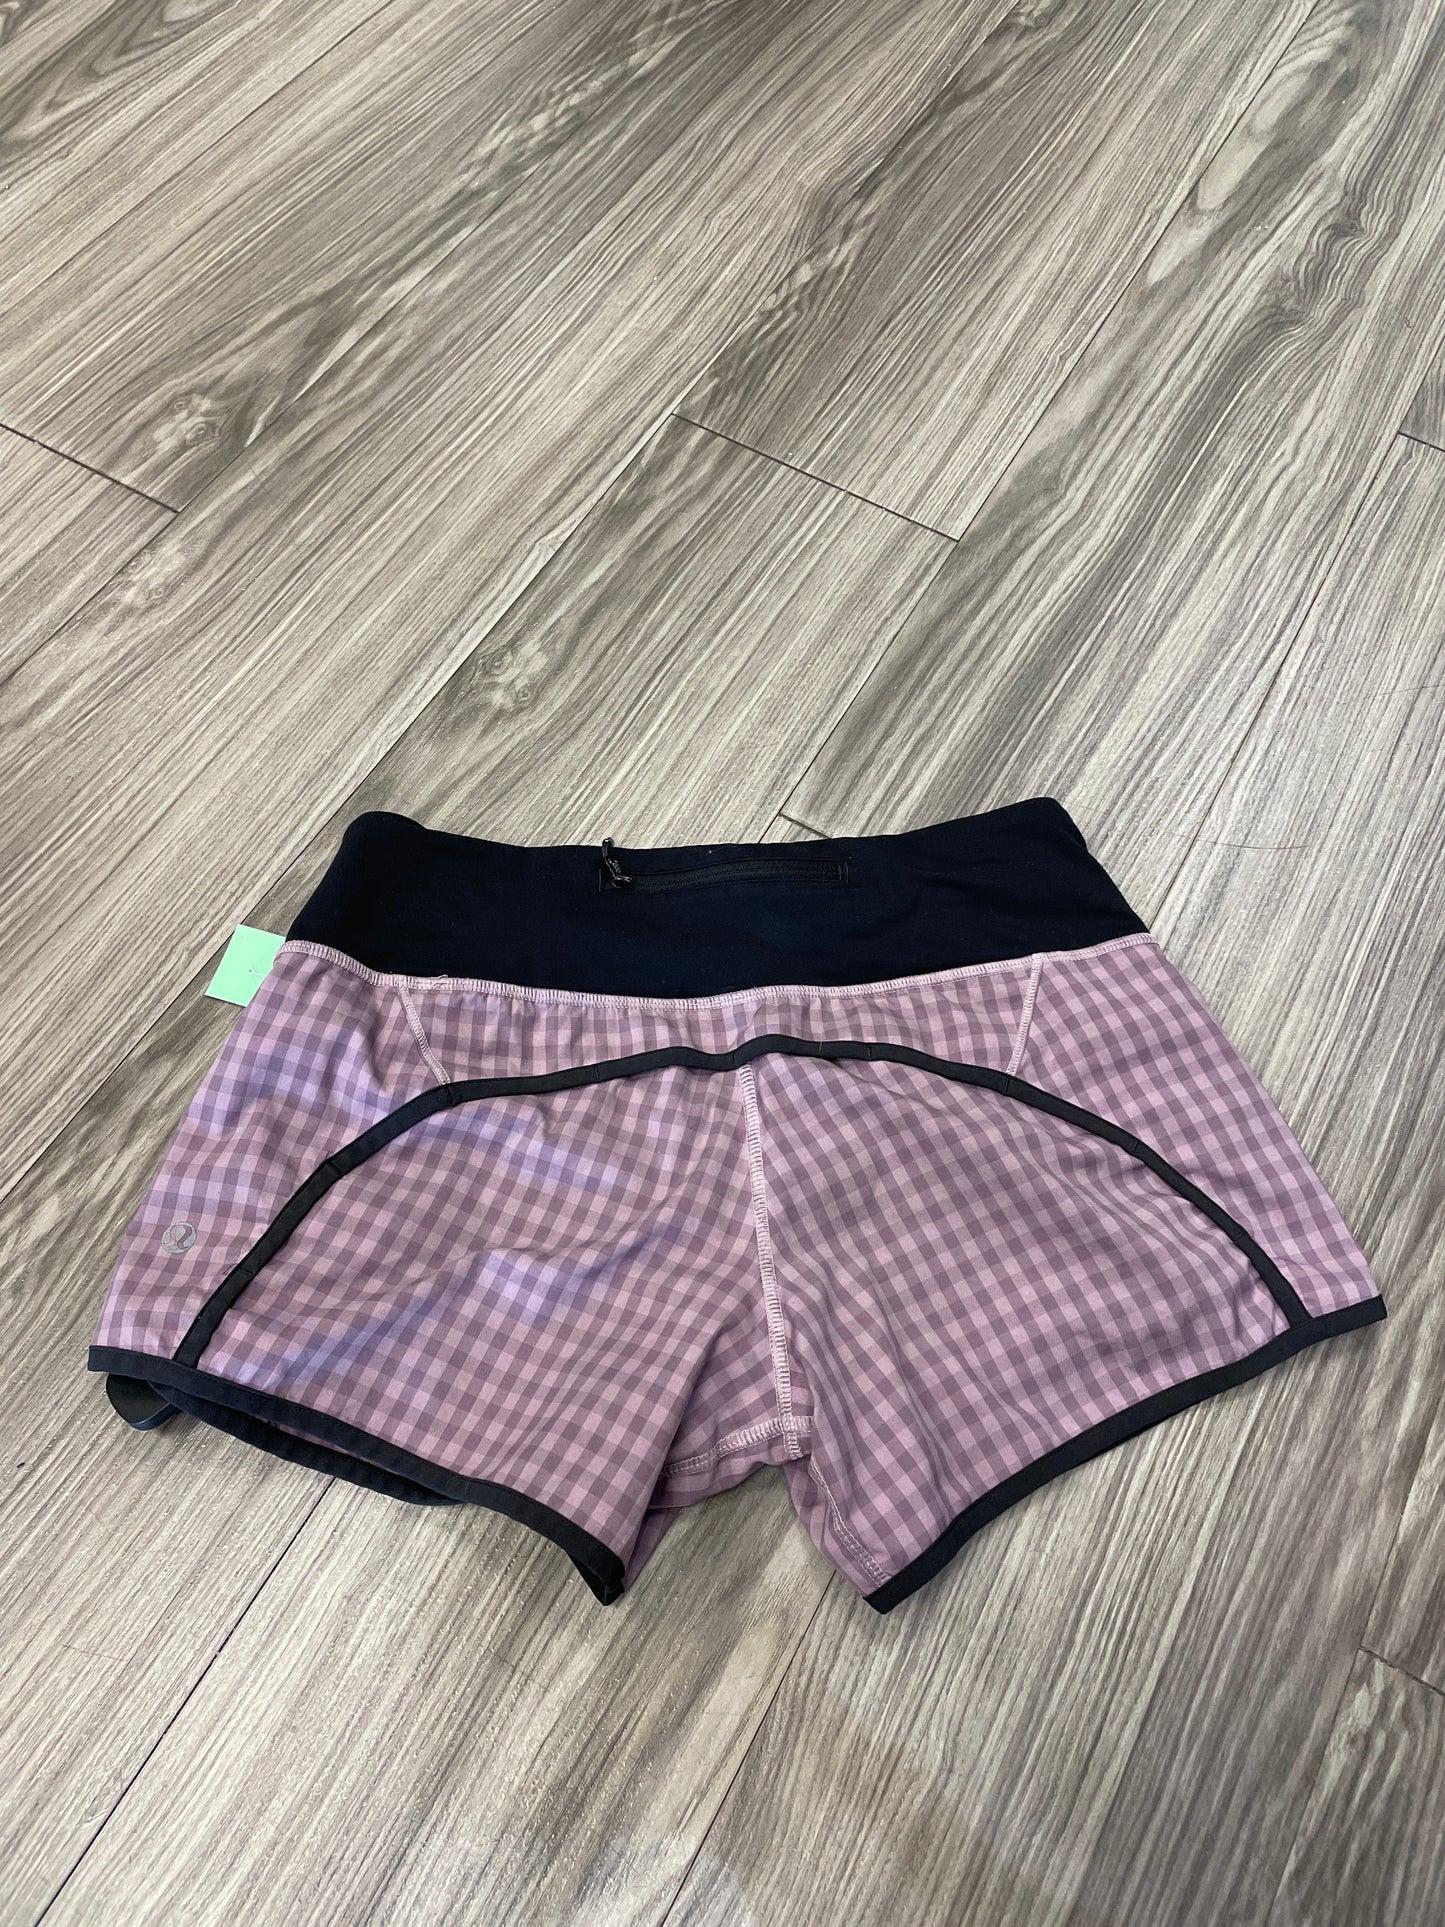 Purple Athletic Shorts Lululemon, Size 4